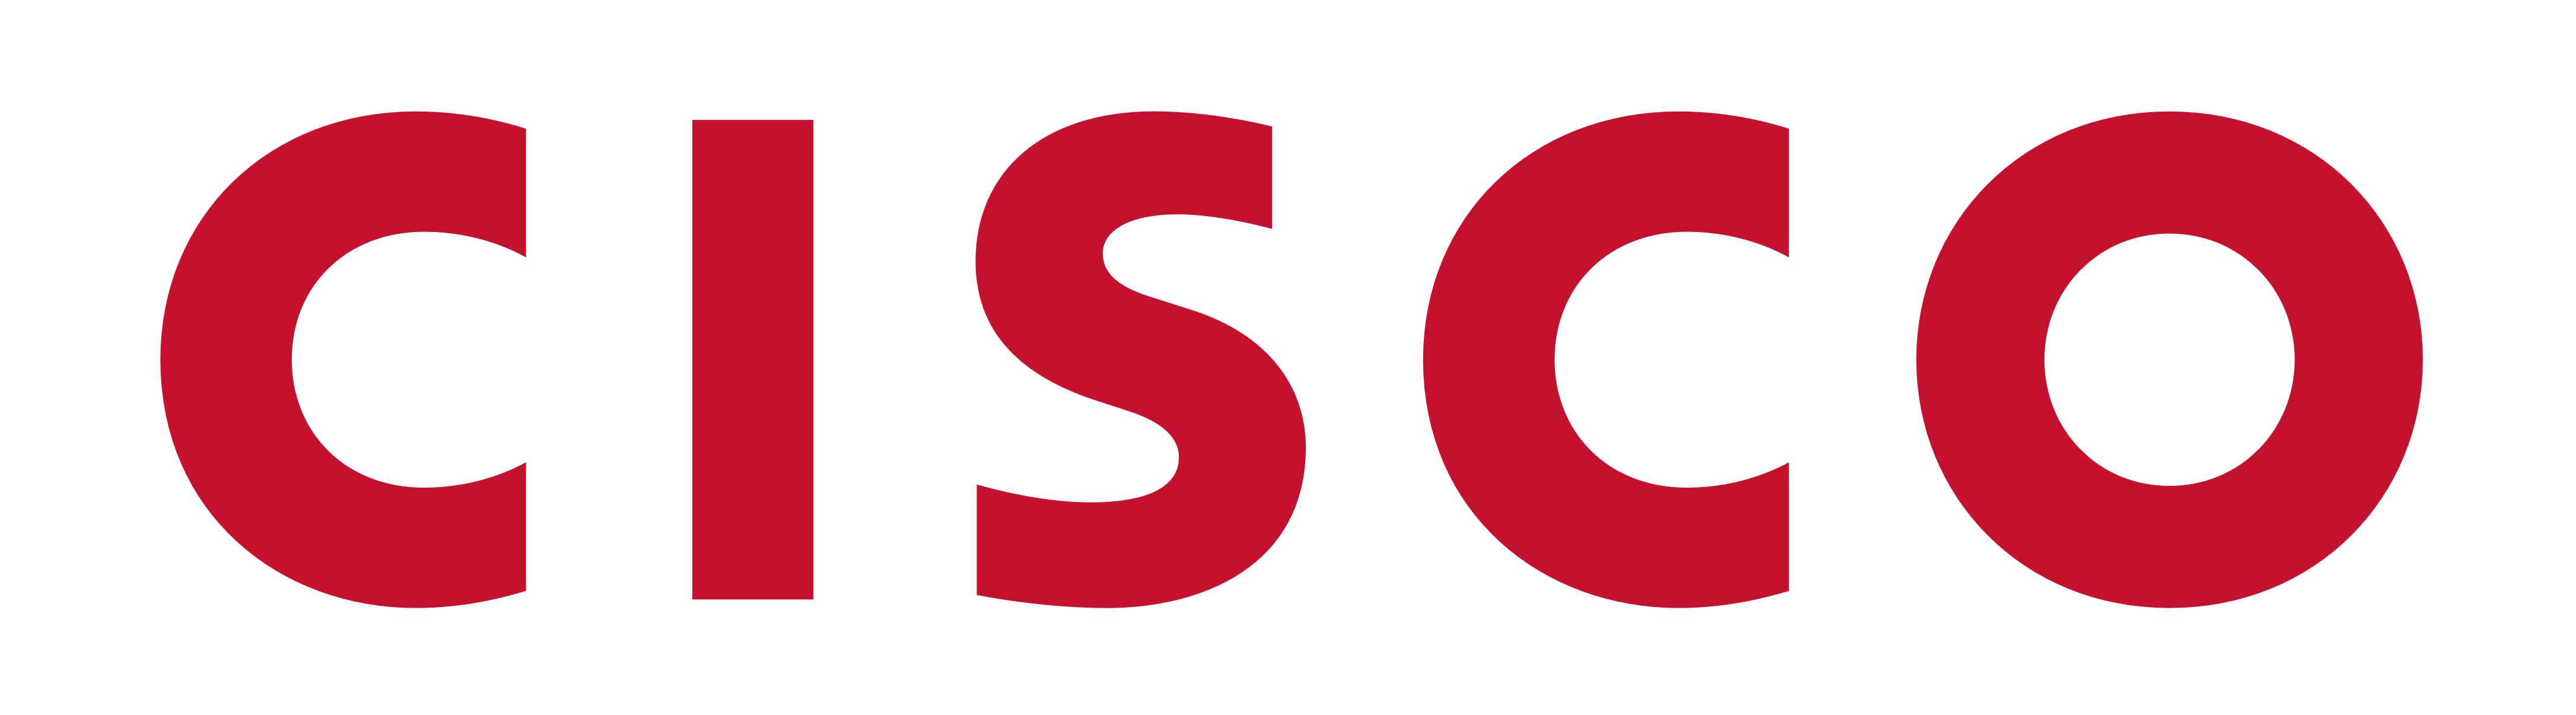 Cisco Logo - Font-Cisco-Logo - Chief Reinvention Officer Chief Reinvention Officer